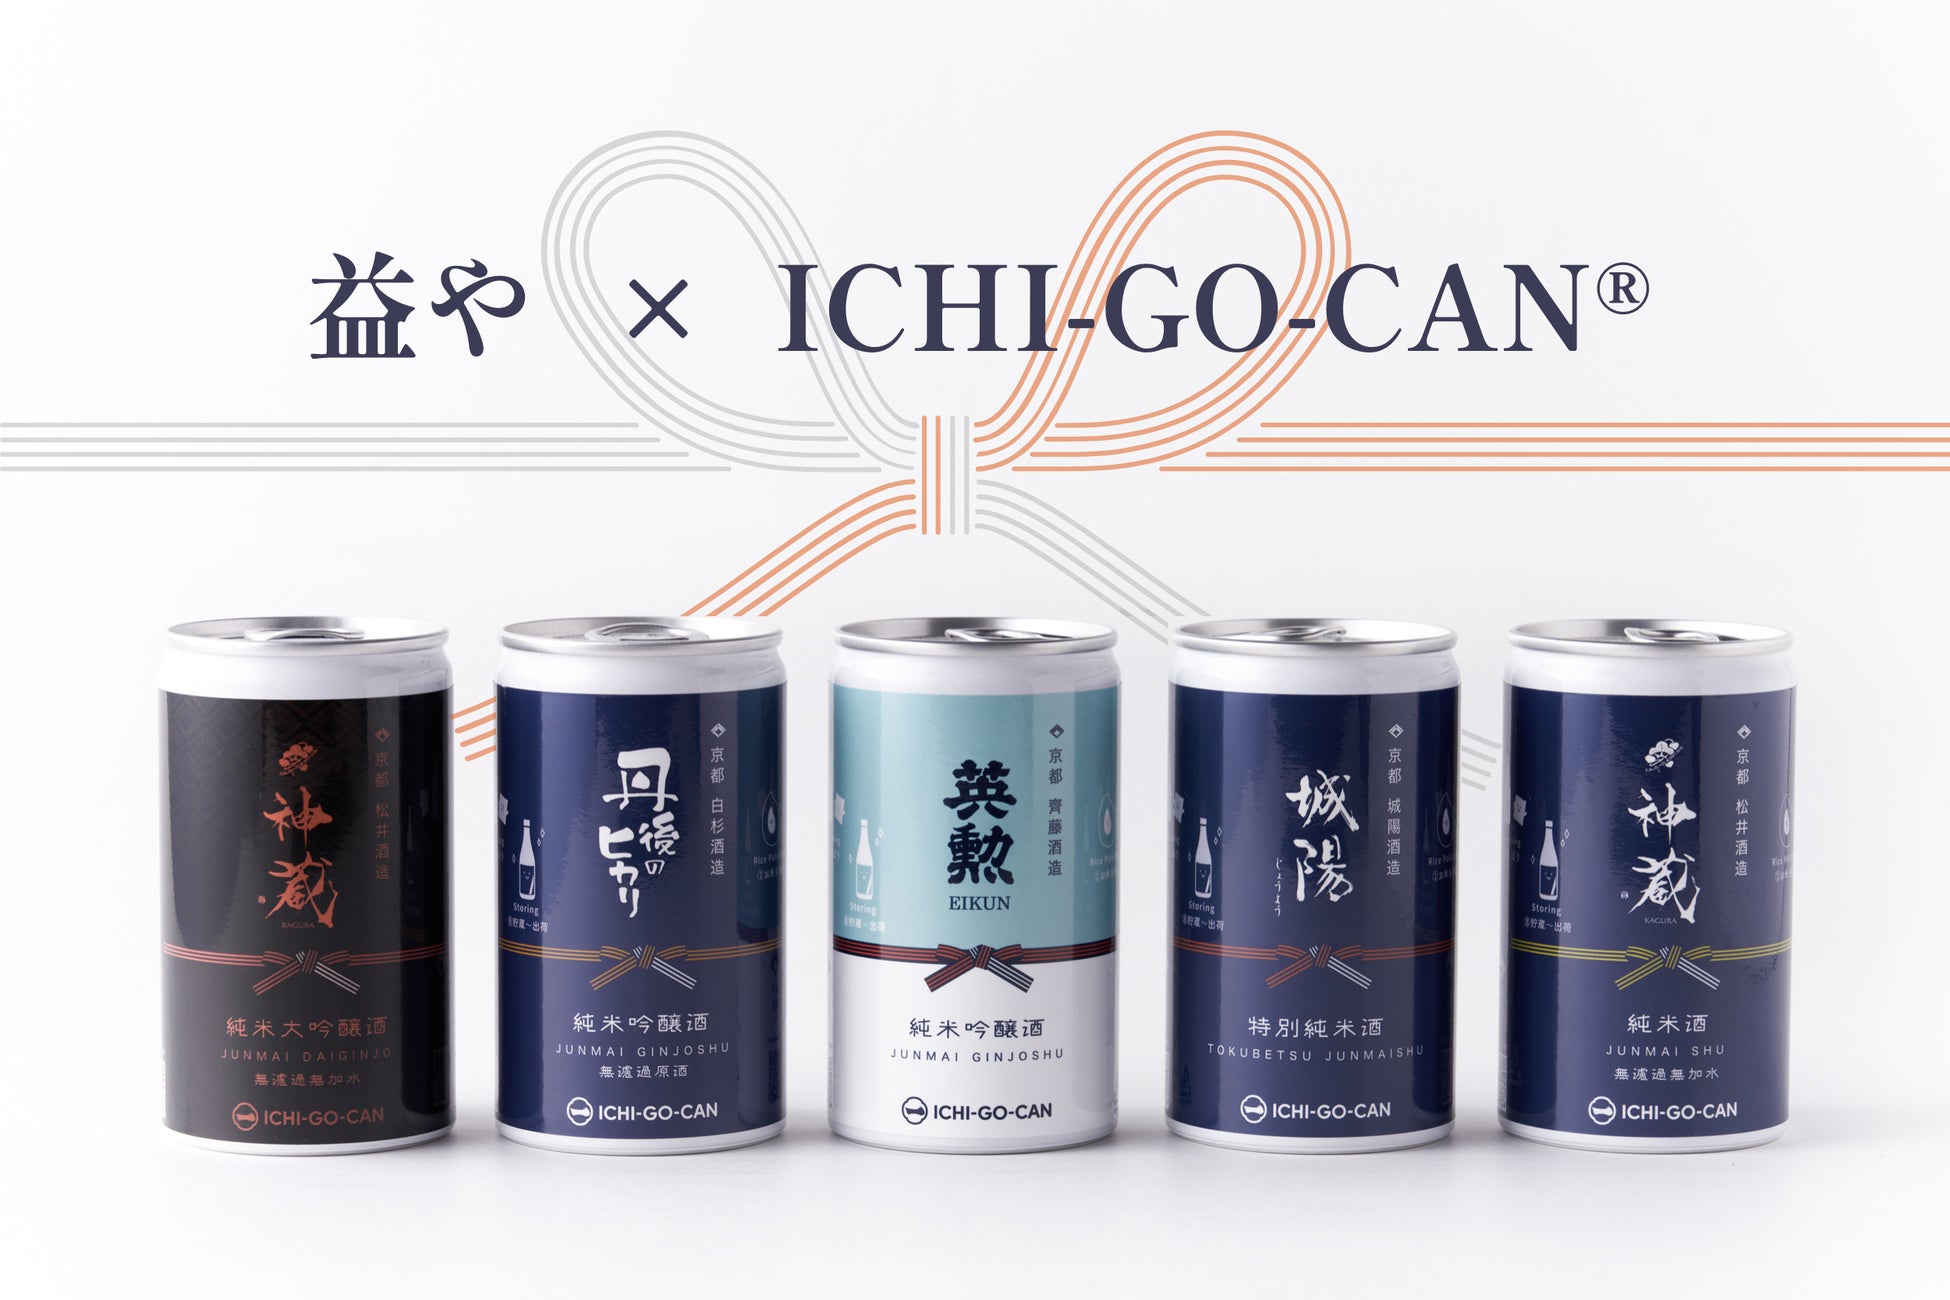 【新商品】京都の人気4蔵5銘酒をICHI-GO-CAN®︎で。日本酒好きが集まるお店「益や」の限定ラベル登場！